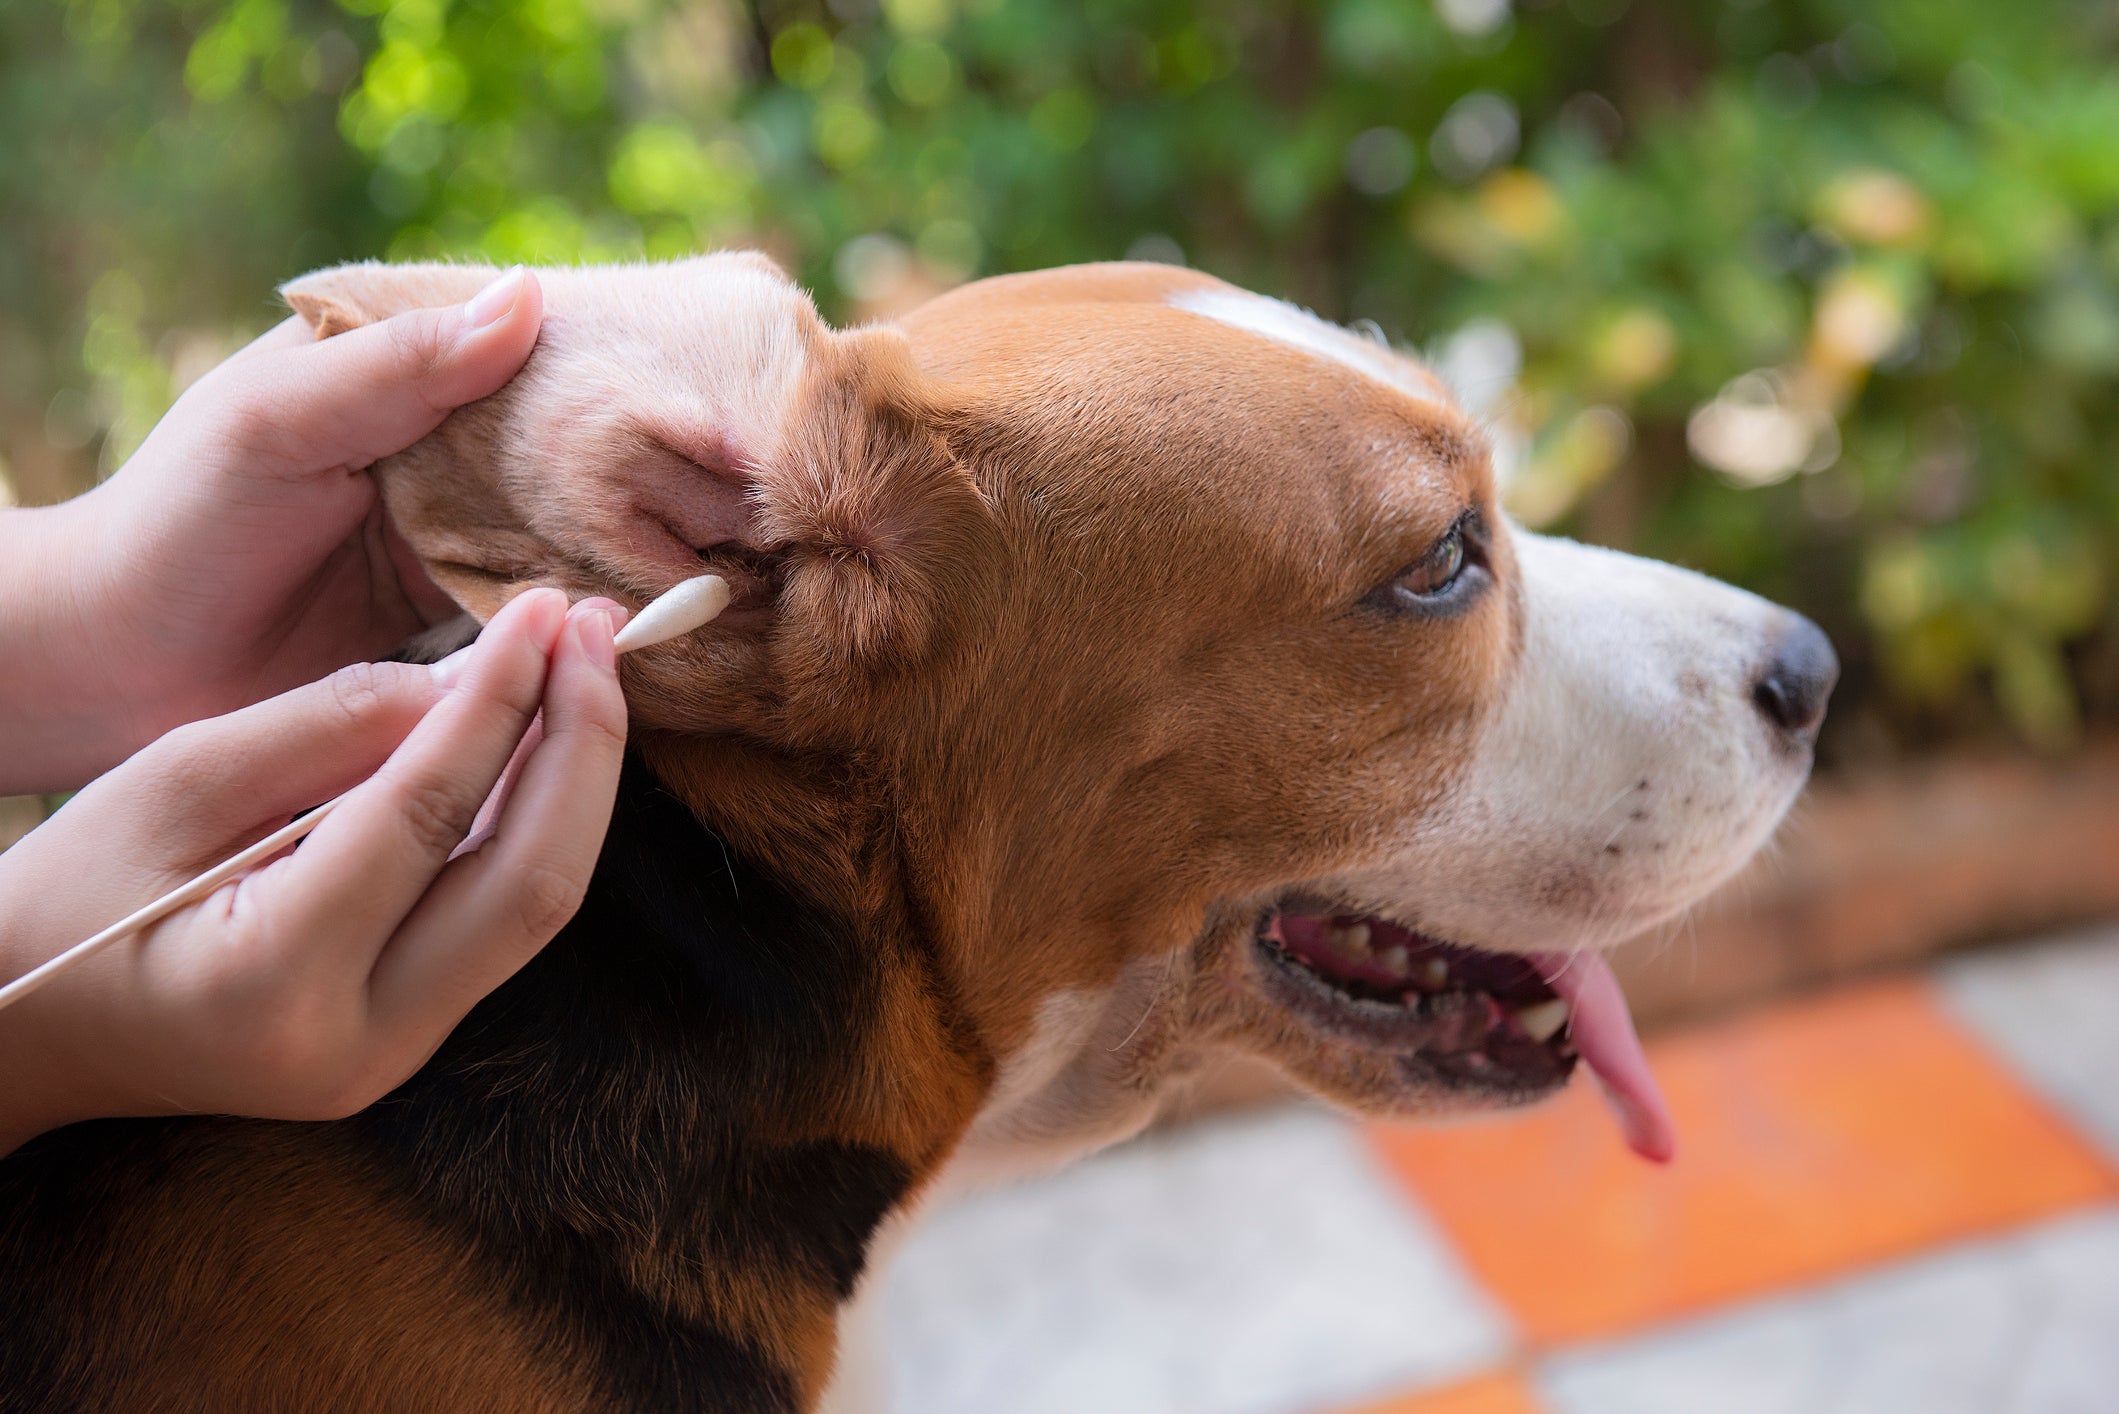 Tutora limpando orelha de cão Beagle com cotonete